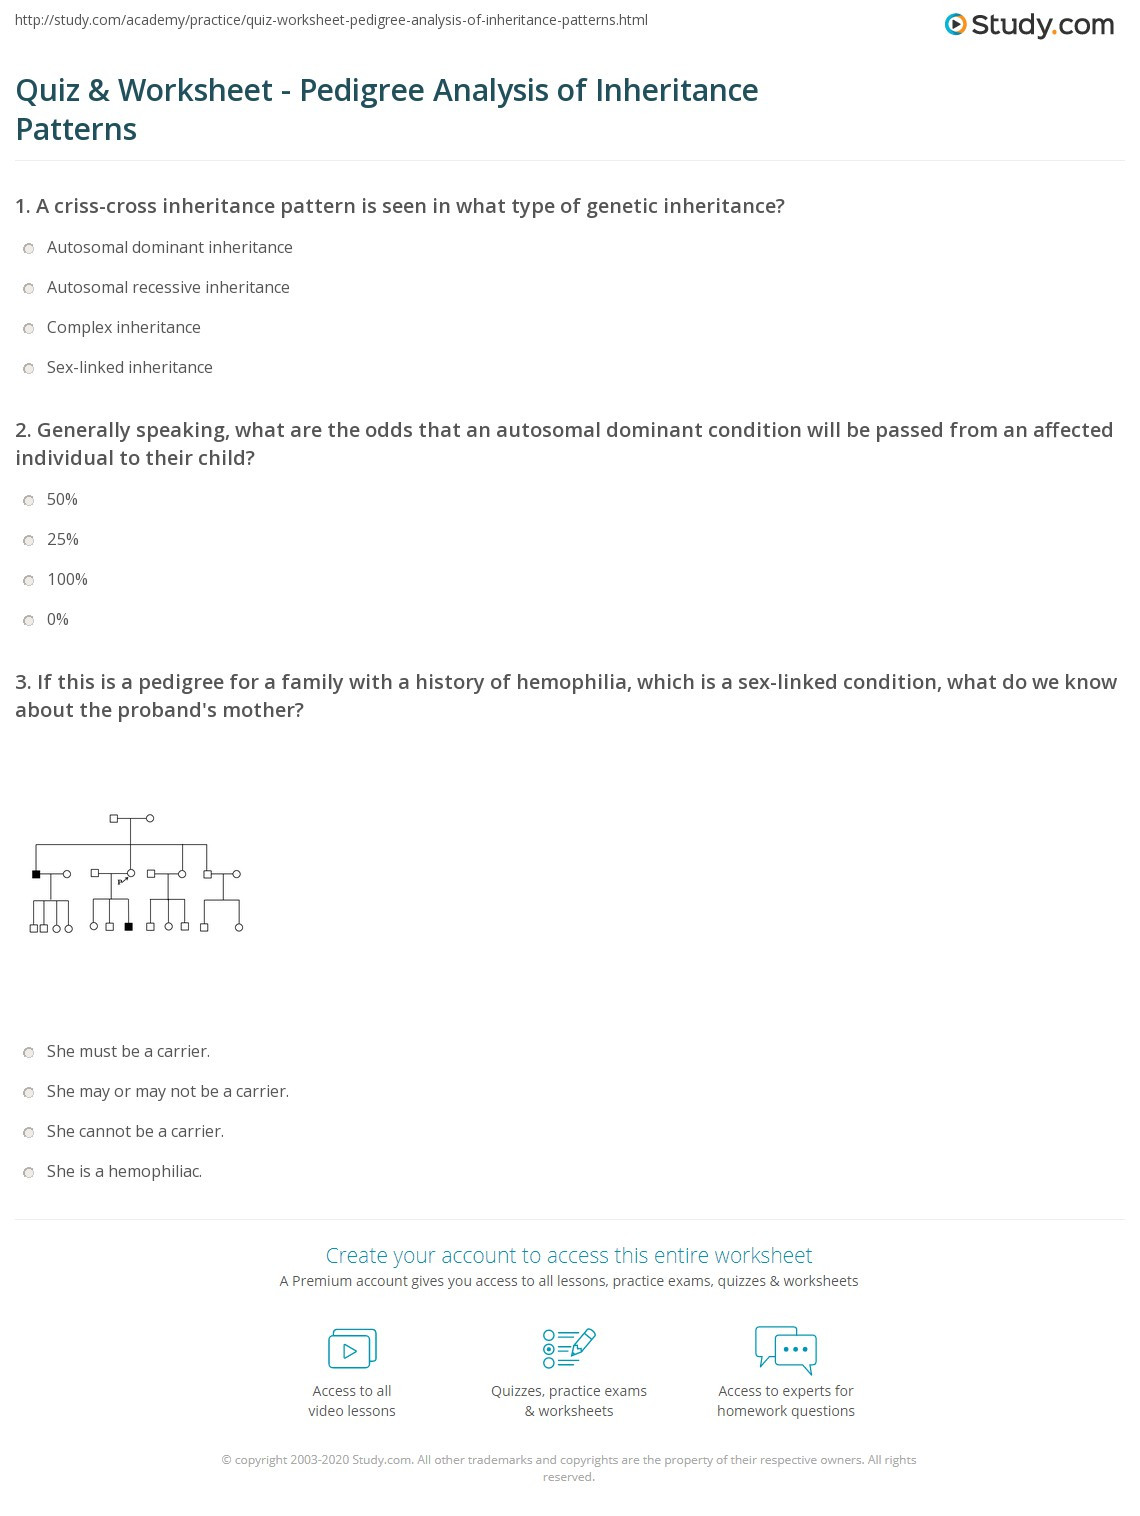 Genetics Pedigree Worksheet Answers Quiz &amp; Worksheet Pedigree Analysis Of Inheritance Patterns